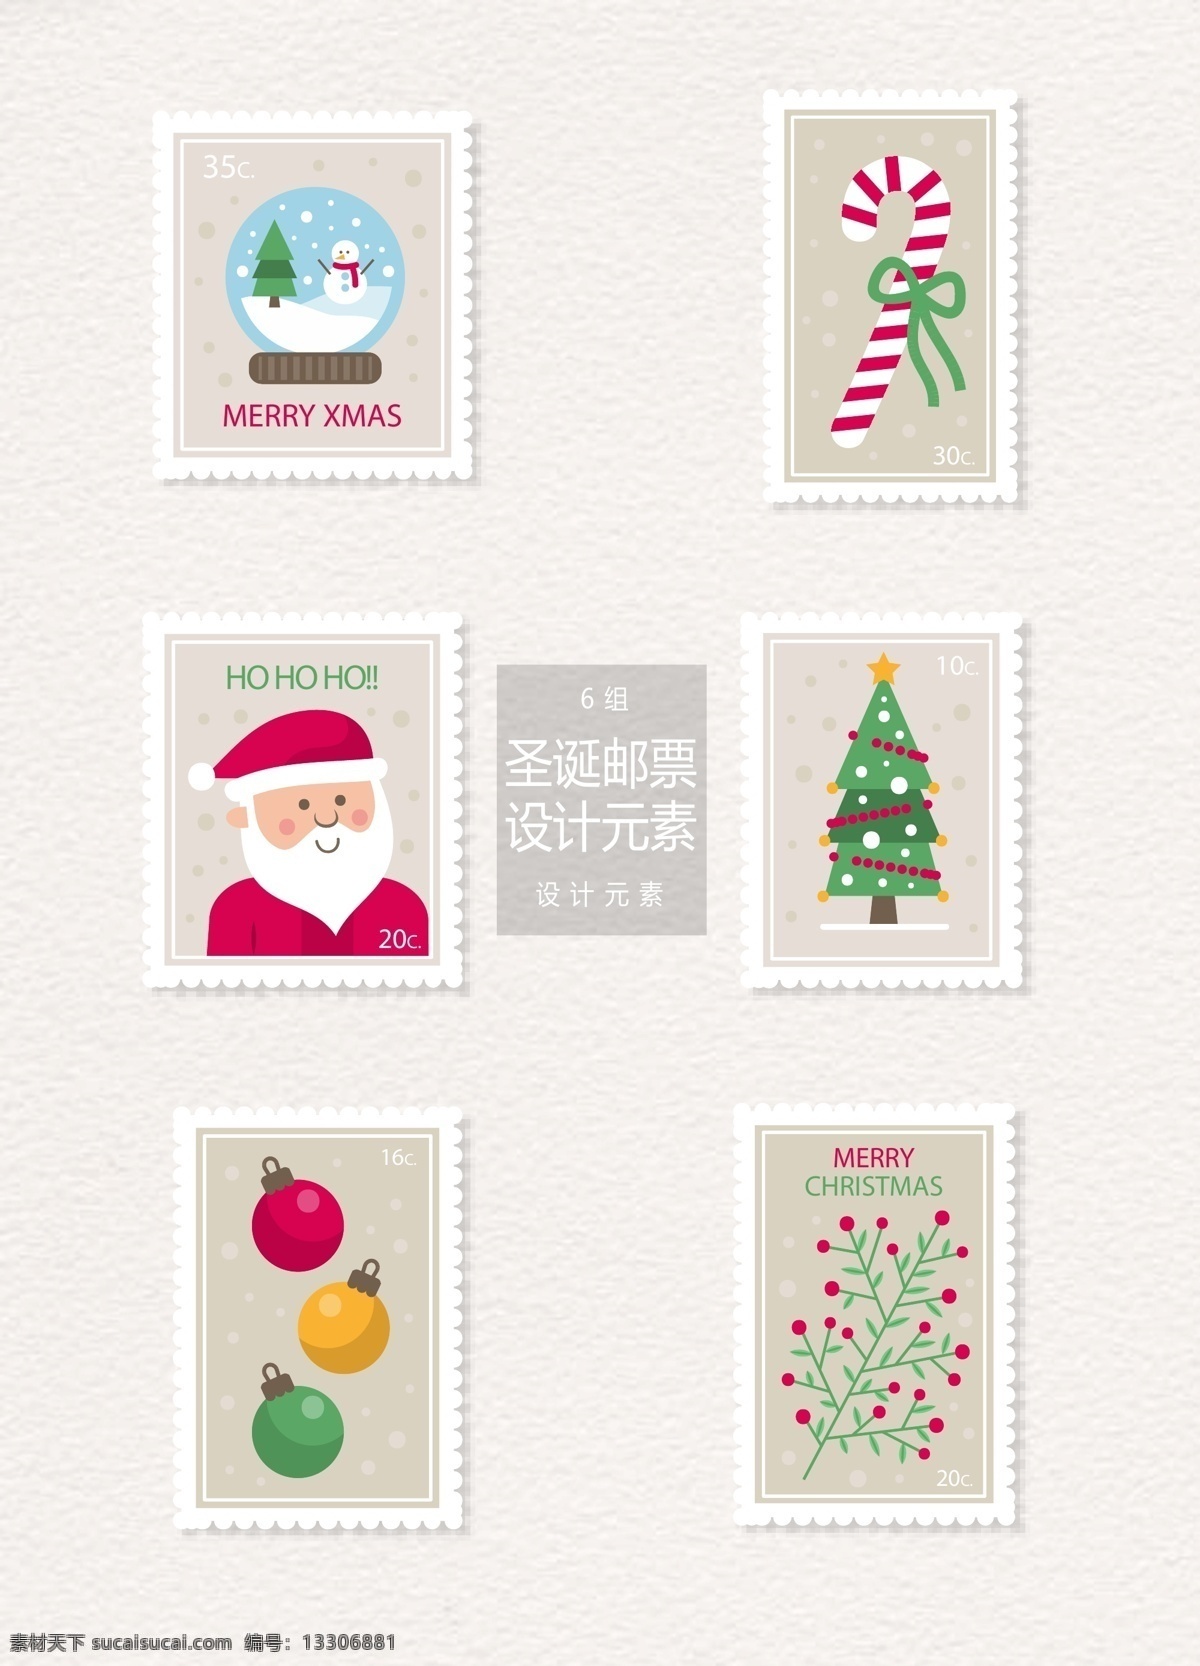 圣诞 邮票 标签 元素 圣诞节 设计元素 标签设计 圣诞老人 圣诞树 圣诞邮票 圣诞标签 雪花球 圣诞球